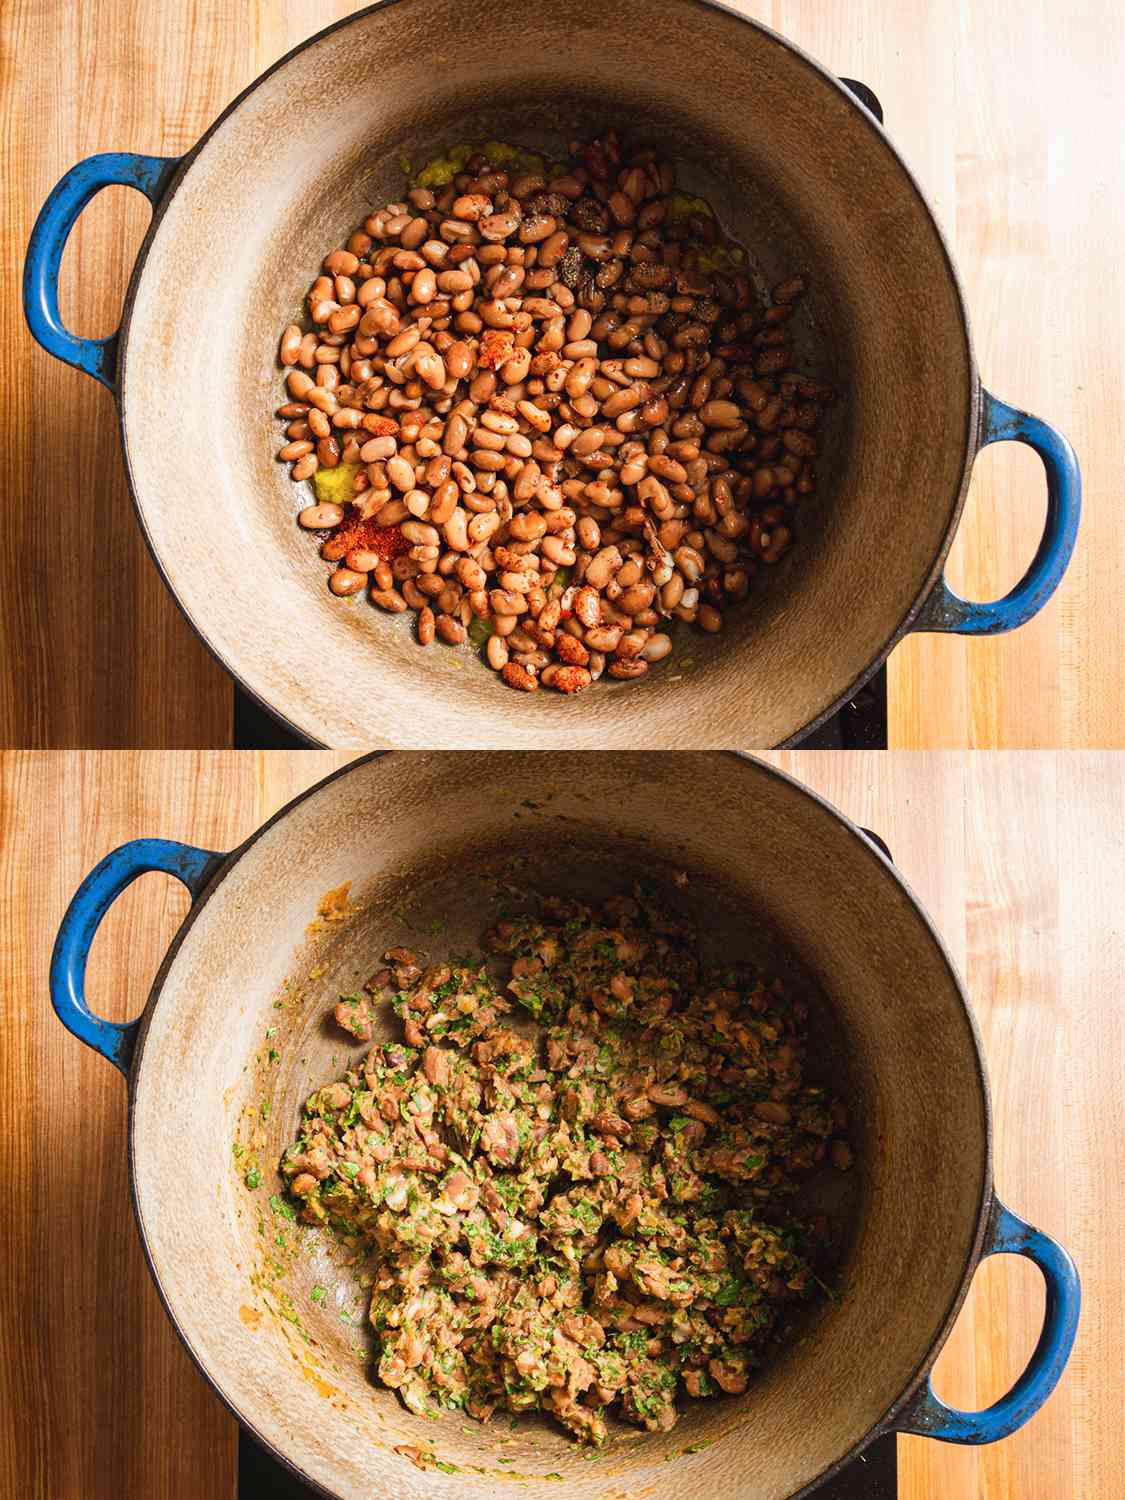 把豆沙捣碎放进锅里。